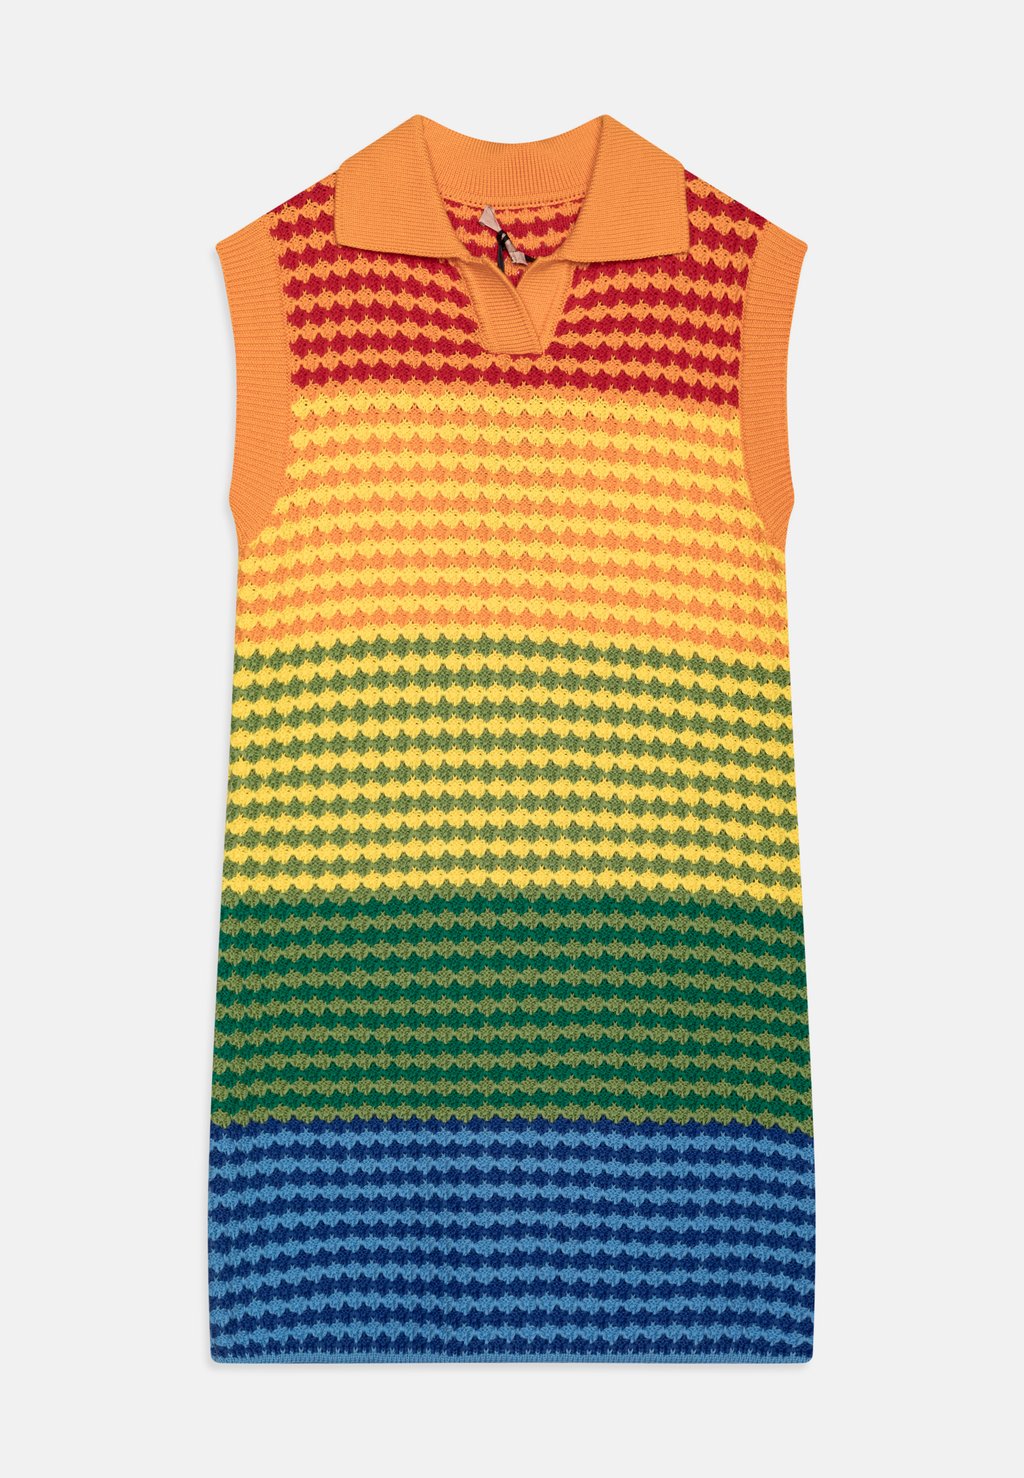 Вязаное платье N°21, разноцветная радуга серьги multicolor rainbow